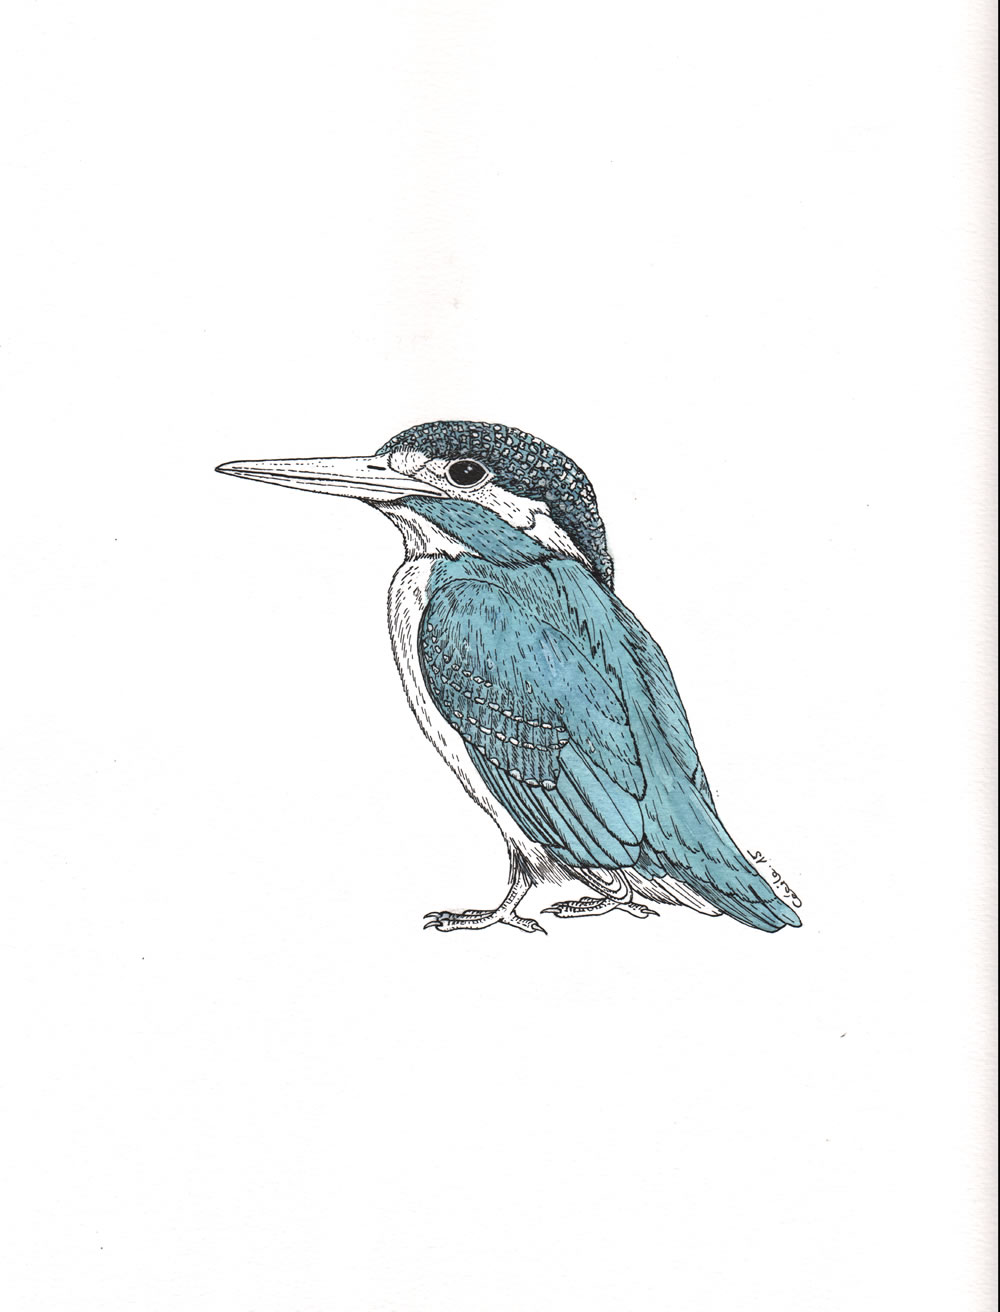 Martin-pêcheur. Illustration pour la revue "Universitas" (Université de Fribourg, Suisse), septembre 2015